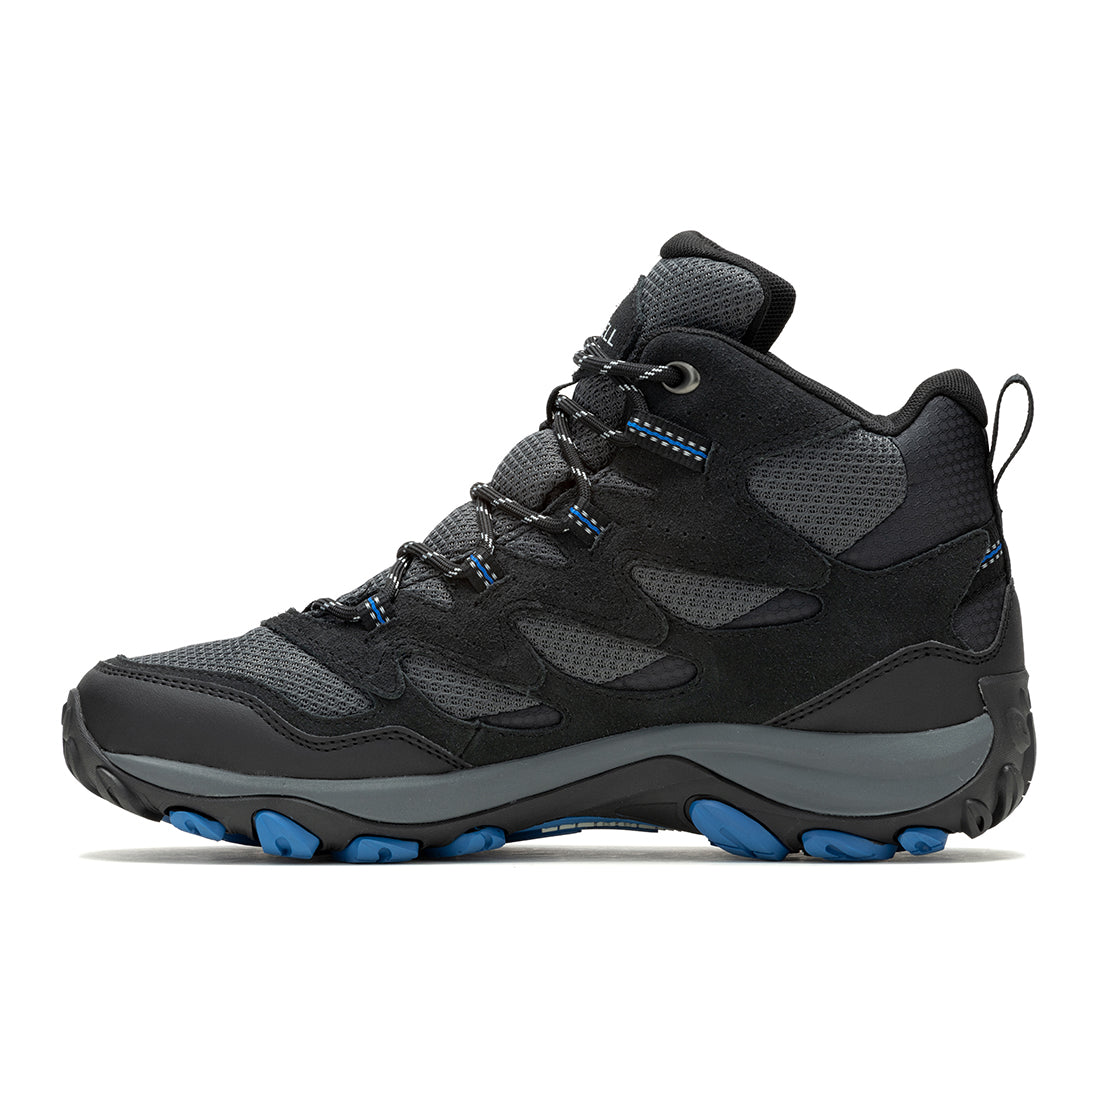 West Rim Mid Waterproof -Black/Blue Mens Hiking Shoes-3